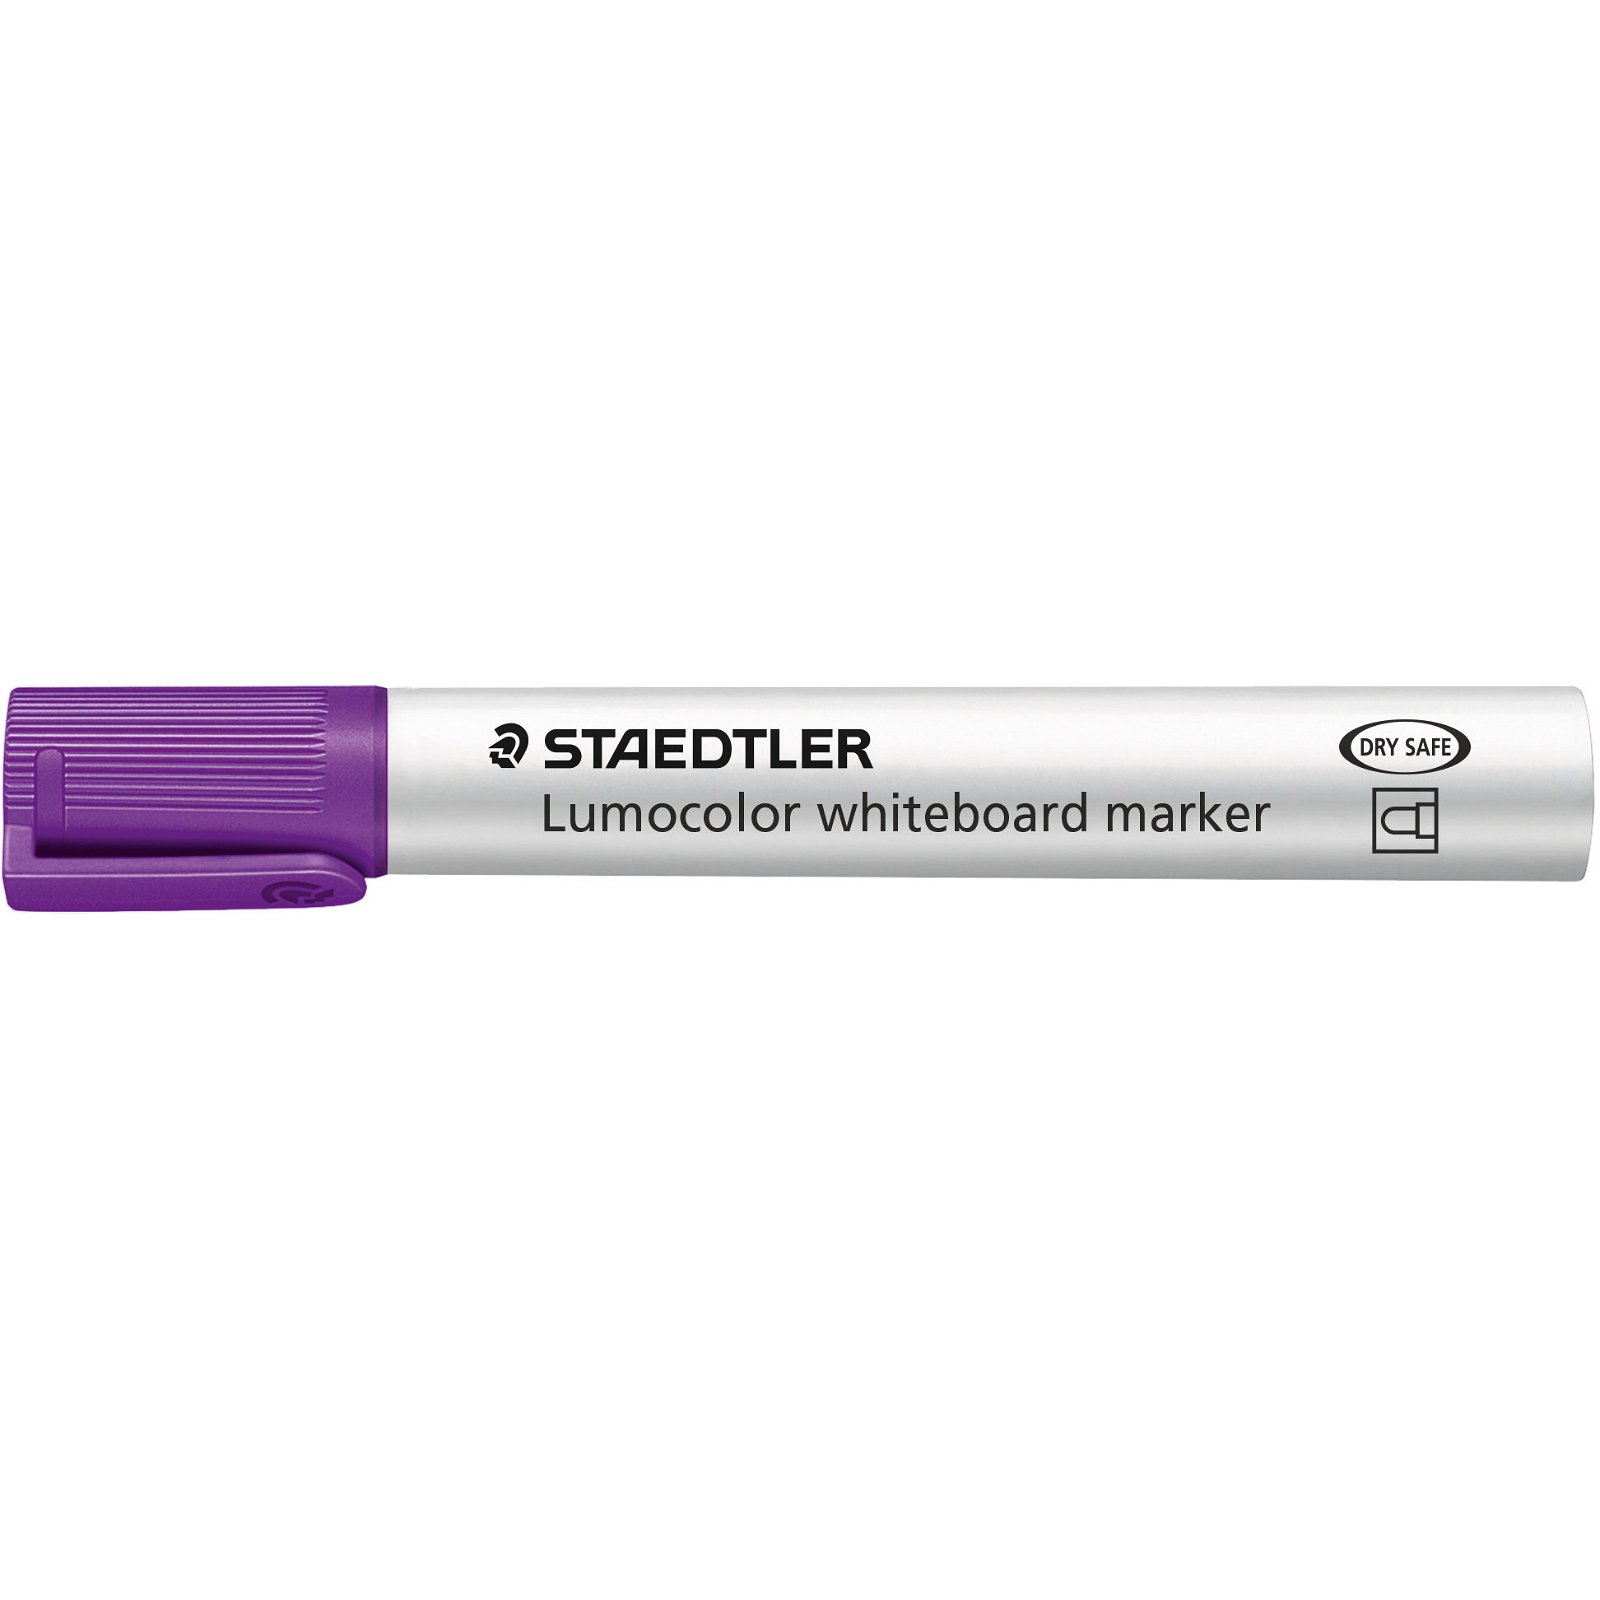 STAEDTLER Lumocolor 351 whiteboardmarker violet